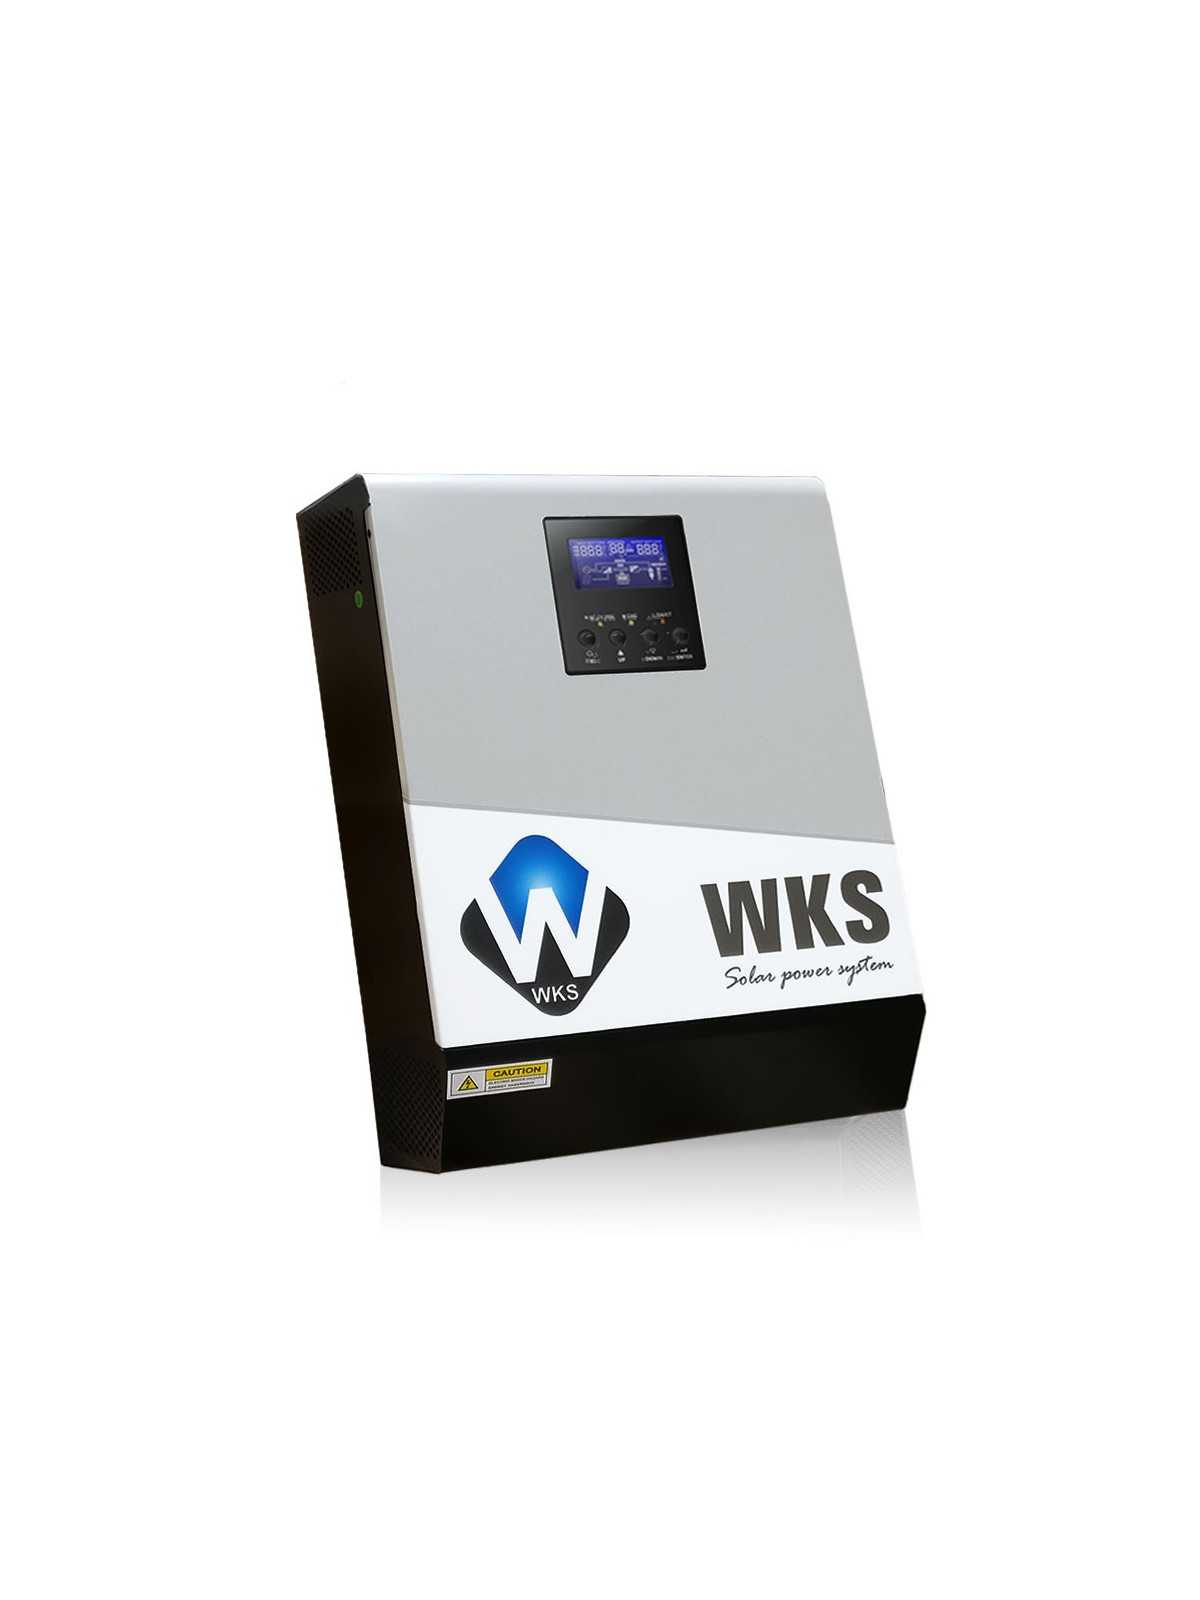 Hybrid-Wechselrichter WKS 1 kVA 24V